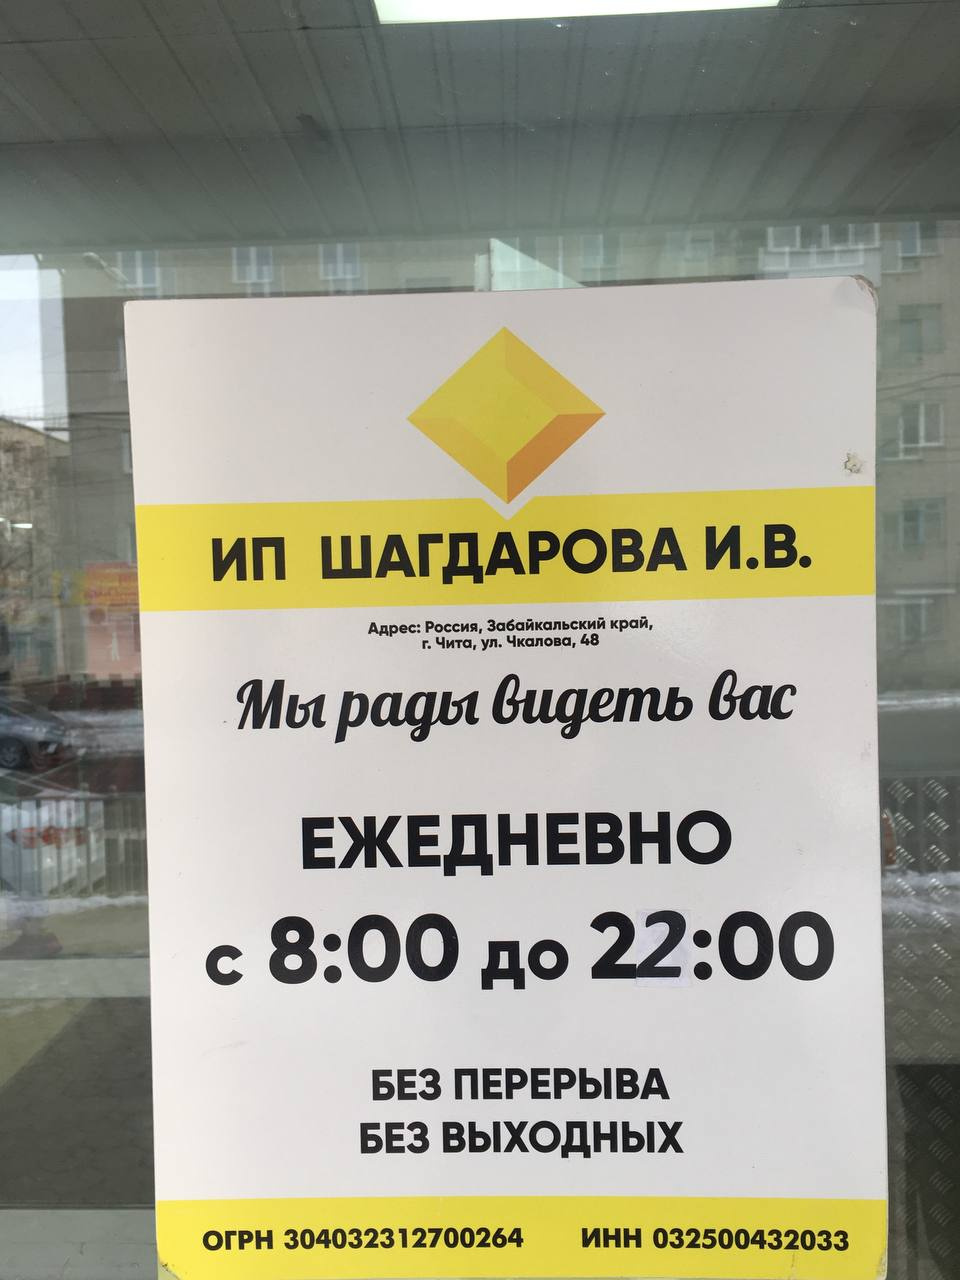 Расписание работы магазина на Чкалова